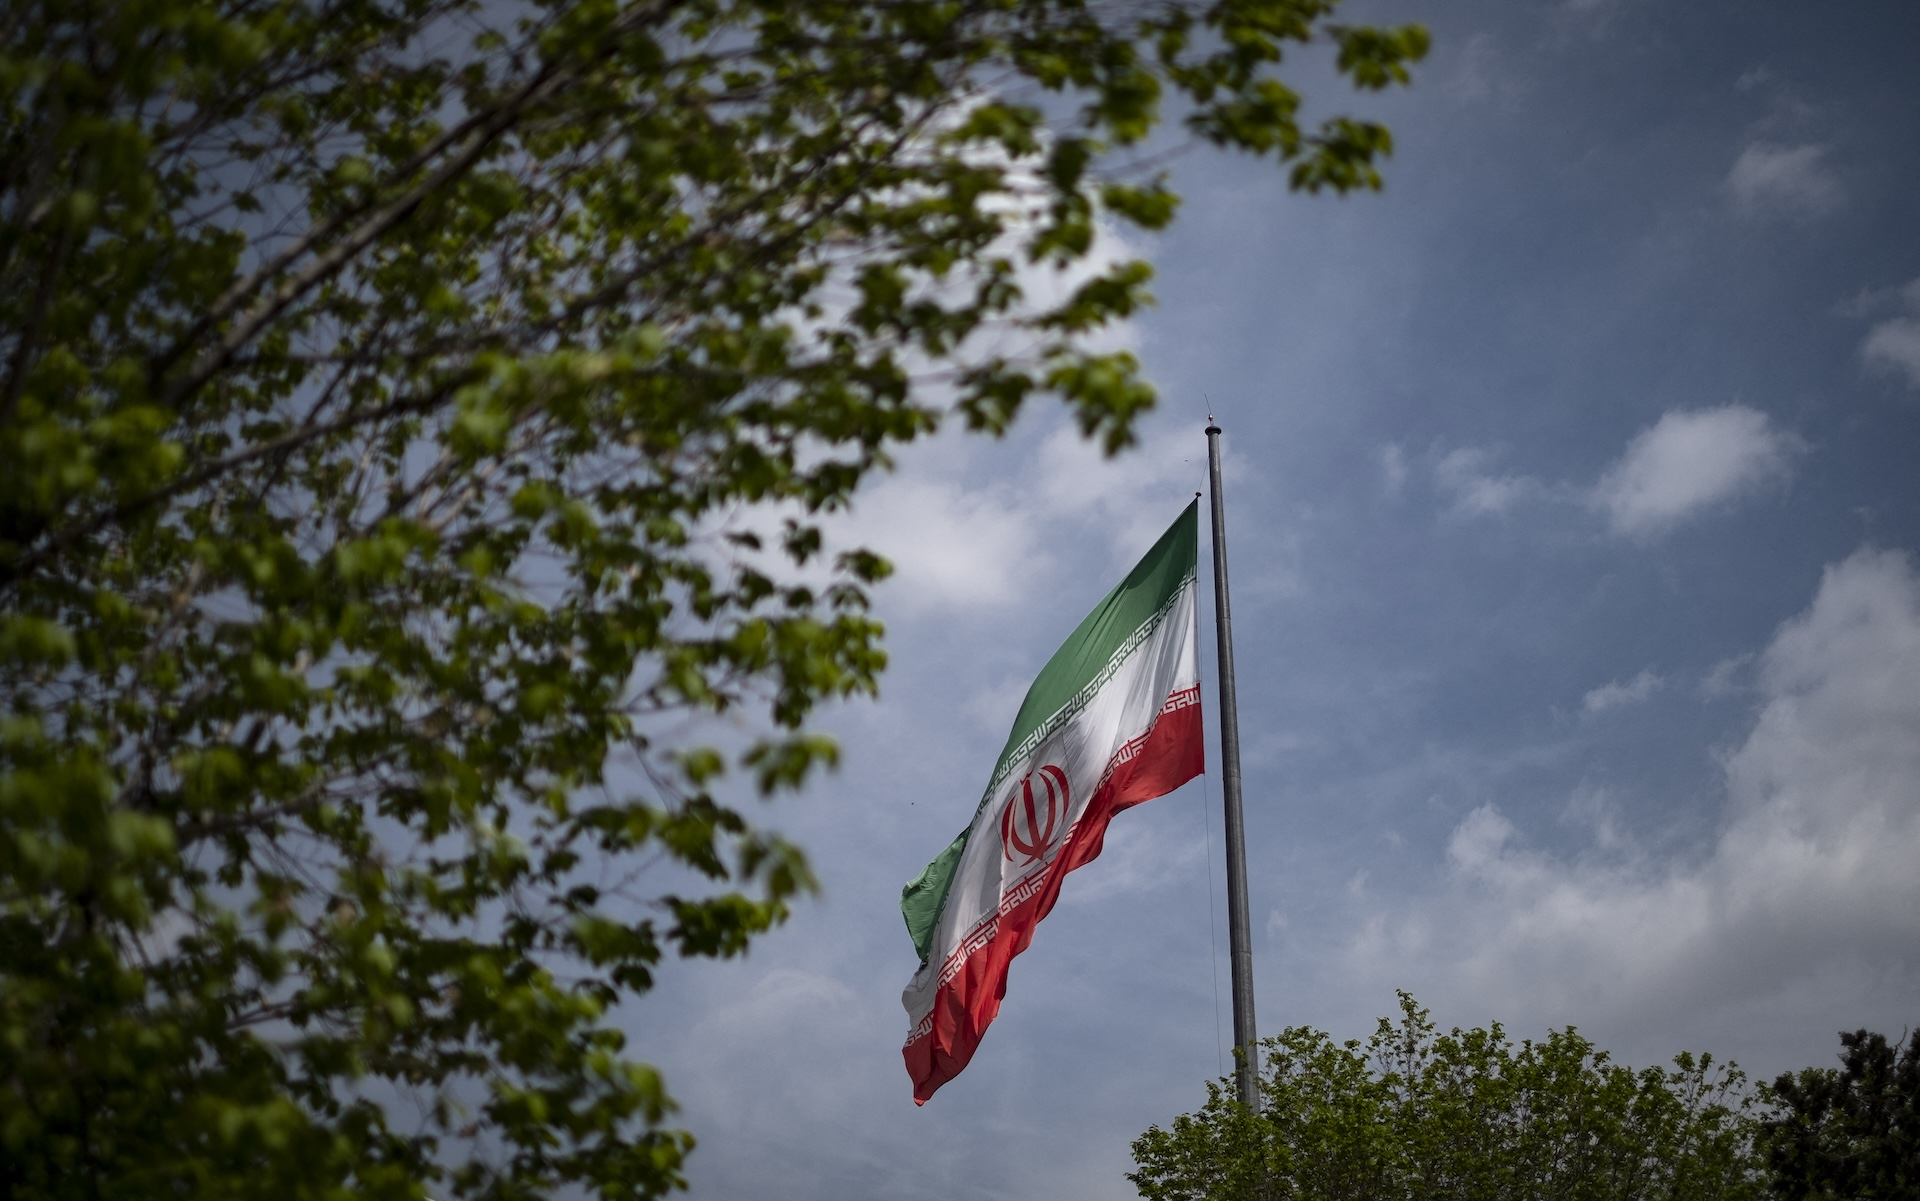 El “poder blando” de Irán en Latinoamérica para interferir sin restricciones